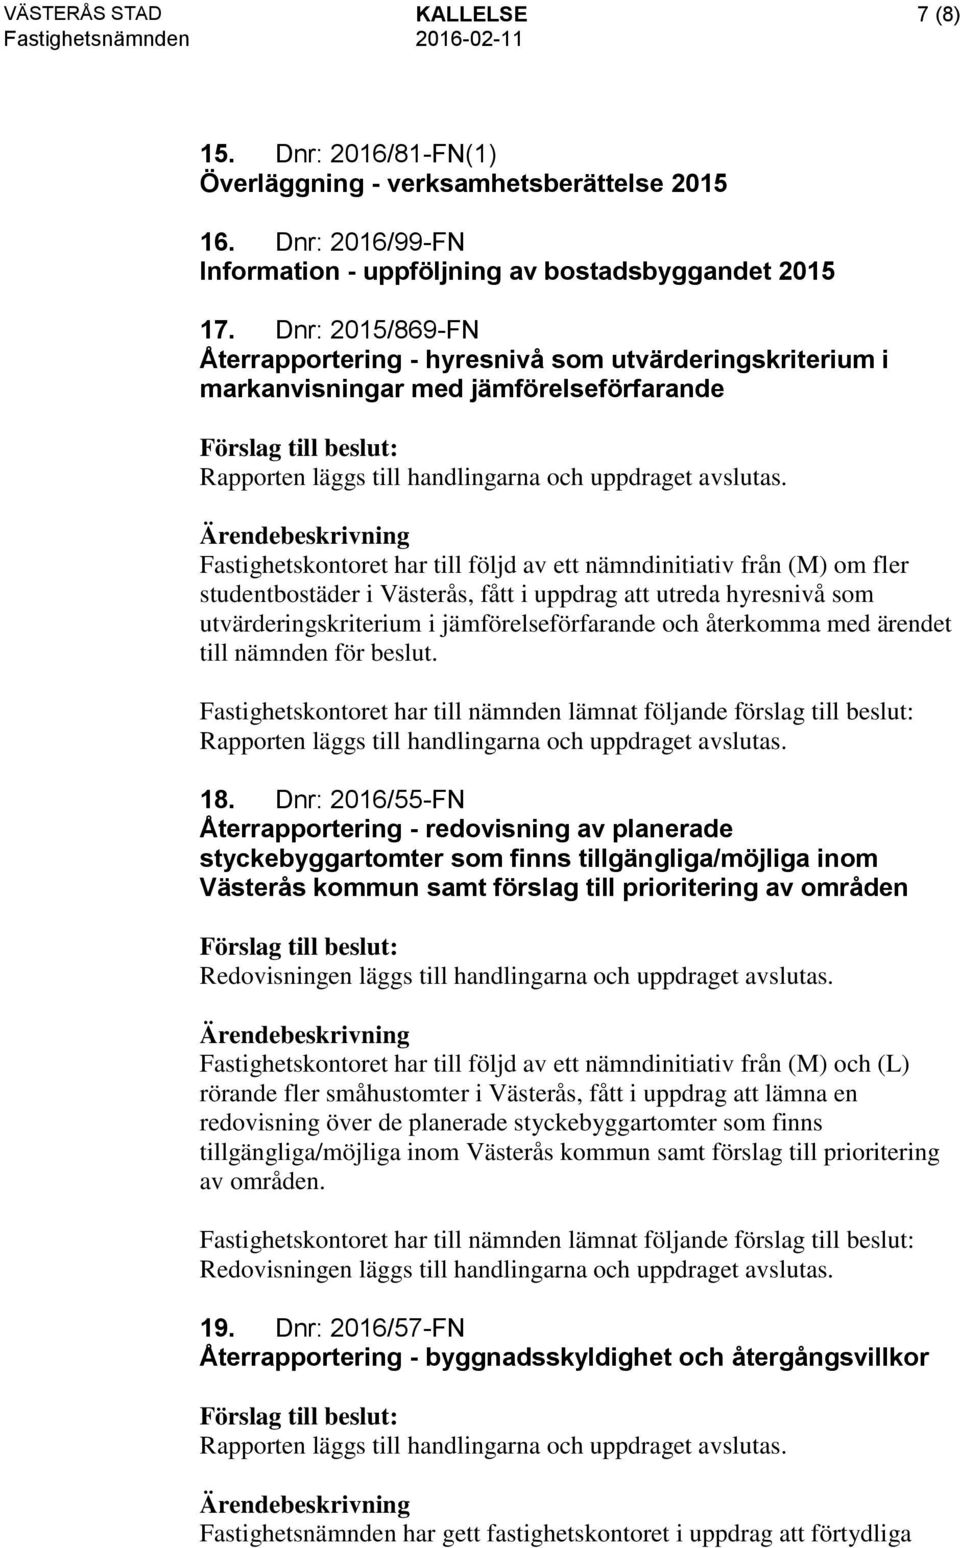 Fastighetskontoret har till följd av ett nämndinitiativ från (M) om fler studentbostäder i Västerås, fått i uppdrag att utreda hyresnivå som utvärderingskriterium i jämförelseförfarande och återkomma